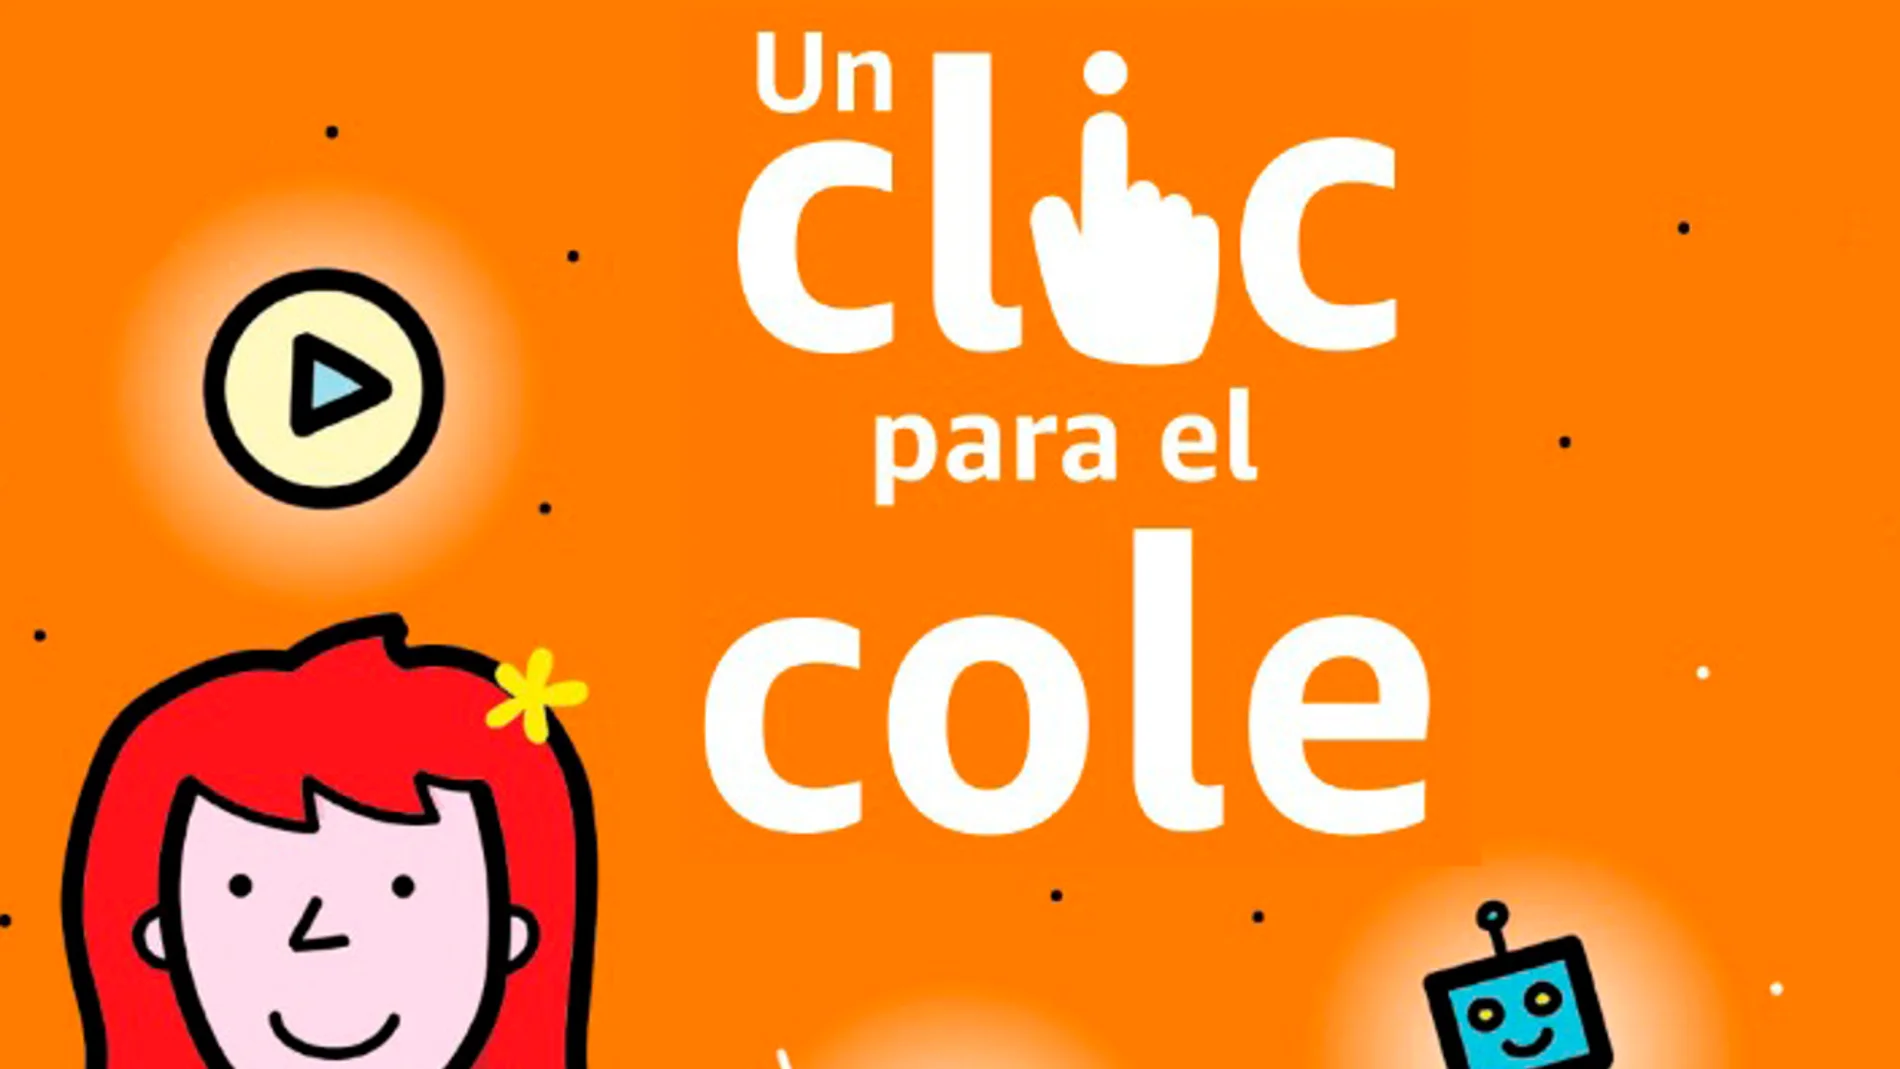 Amazon apuesta un año más por su iniciativa &#39;Un clic para el cole&#39; para ayudar a los centros educativos españoles